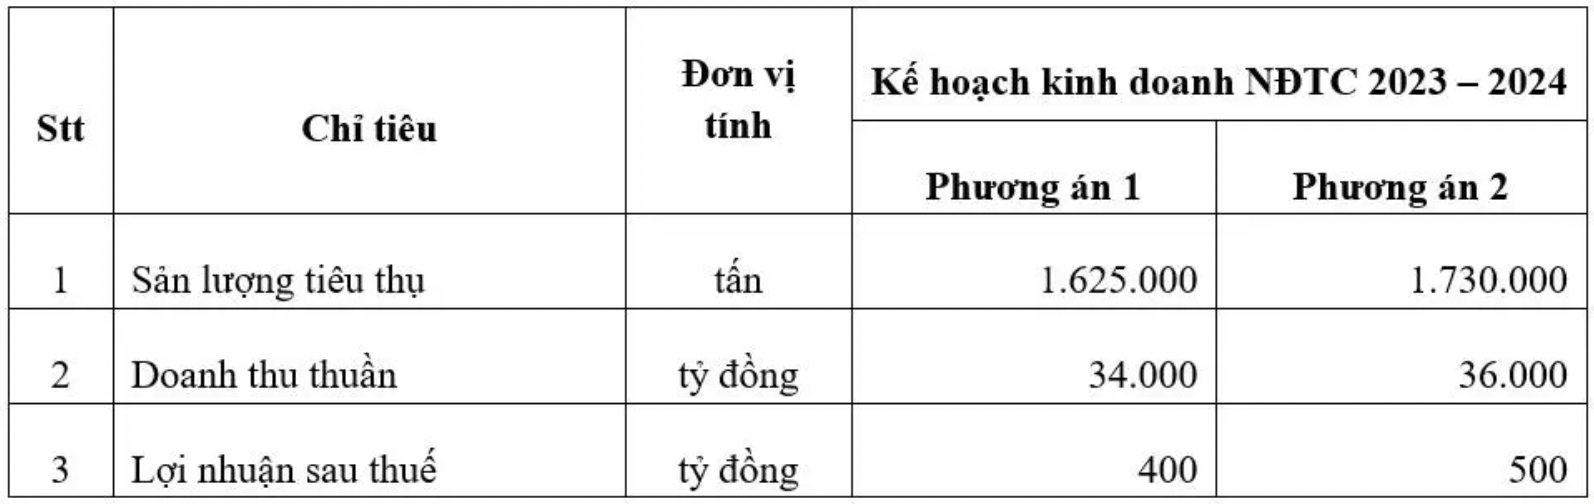 Thép cán nóng HRC Trung Quốc giá rẻ tràn vào Việt Nam, lượng nhập tăng 200% sau 2 tháng: Hoa Sen (HSG) được dự báo tăng 25% lợi nhuận- Ảnh 1.